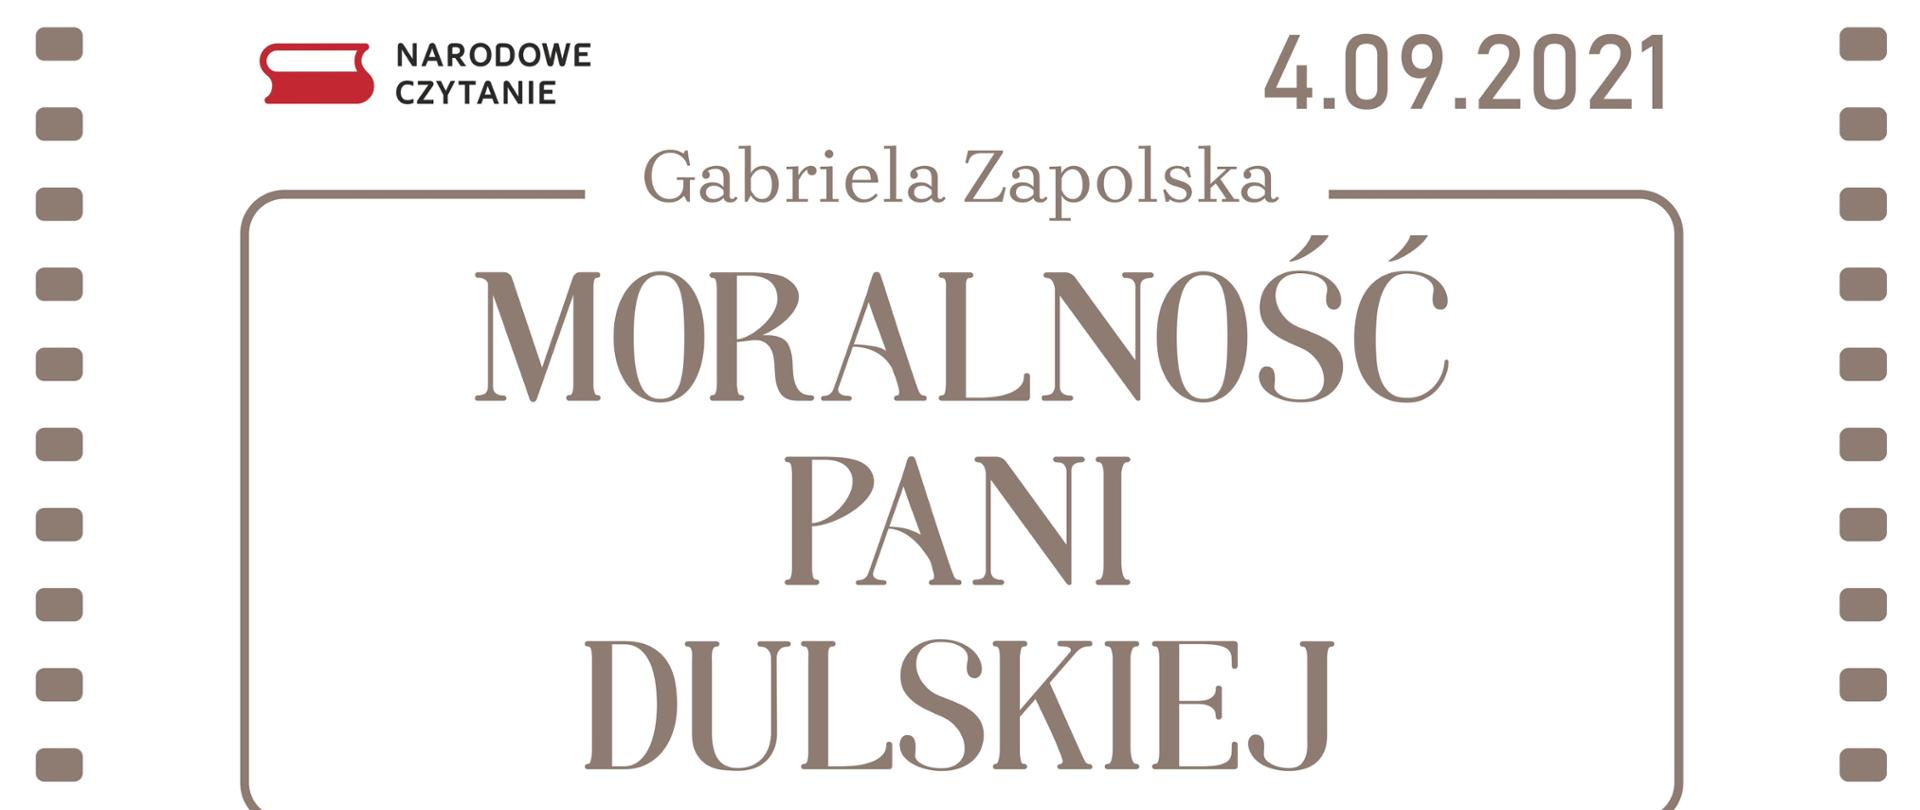 Plansza informująca o inicjatywie - Narodowe Czytanie, odbędzie się 4.09.2021 - lektura jubileuszowej 10 edycji będzie Moralność pani Dulskiej – Gabrieli Zapolskiej.